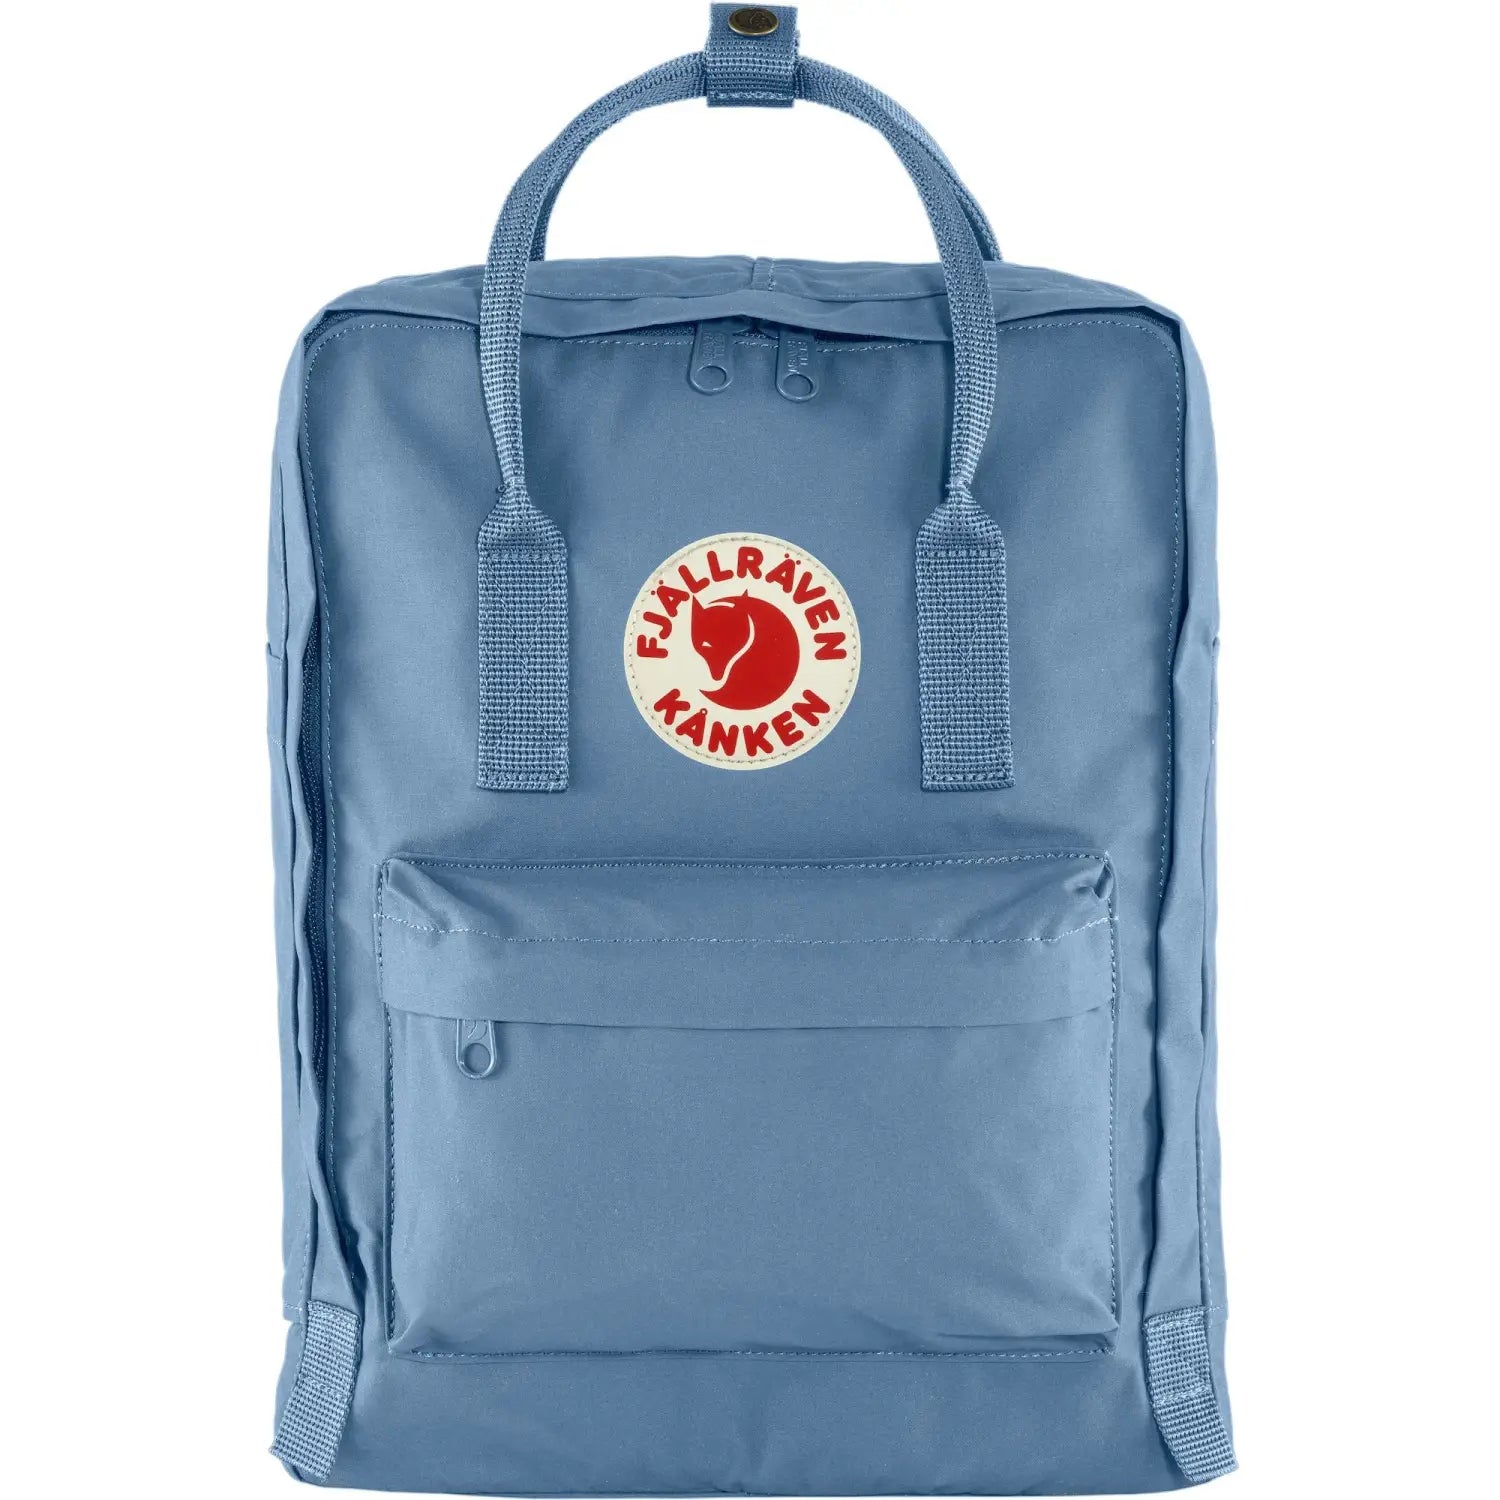 Fjallraven Kanken Backpack, blue ridge color, front view.